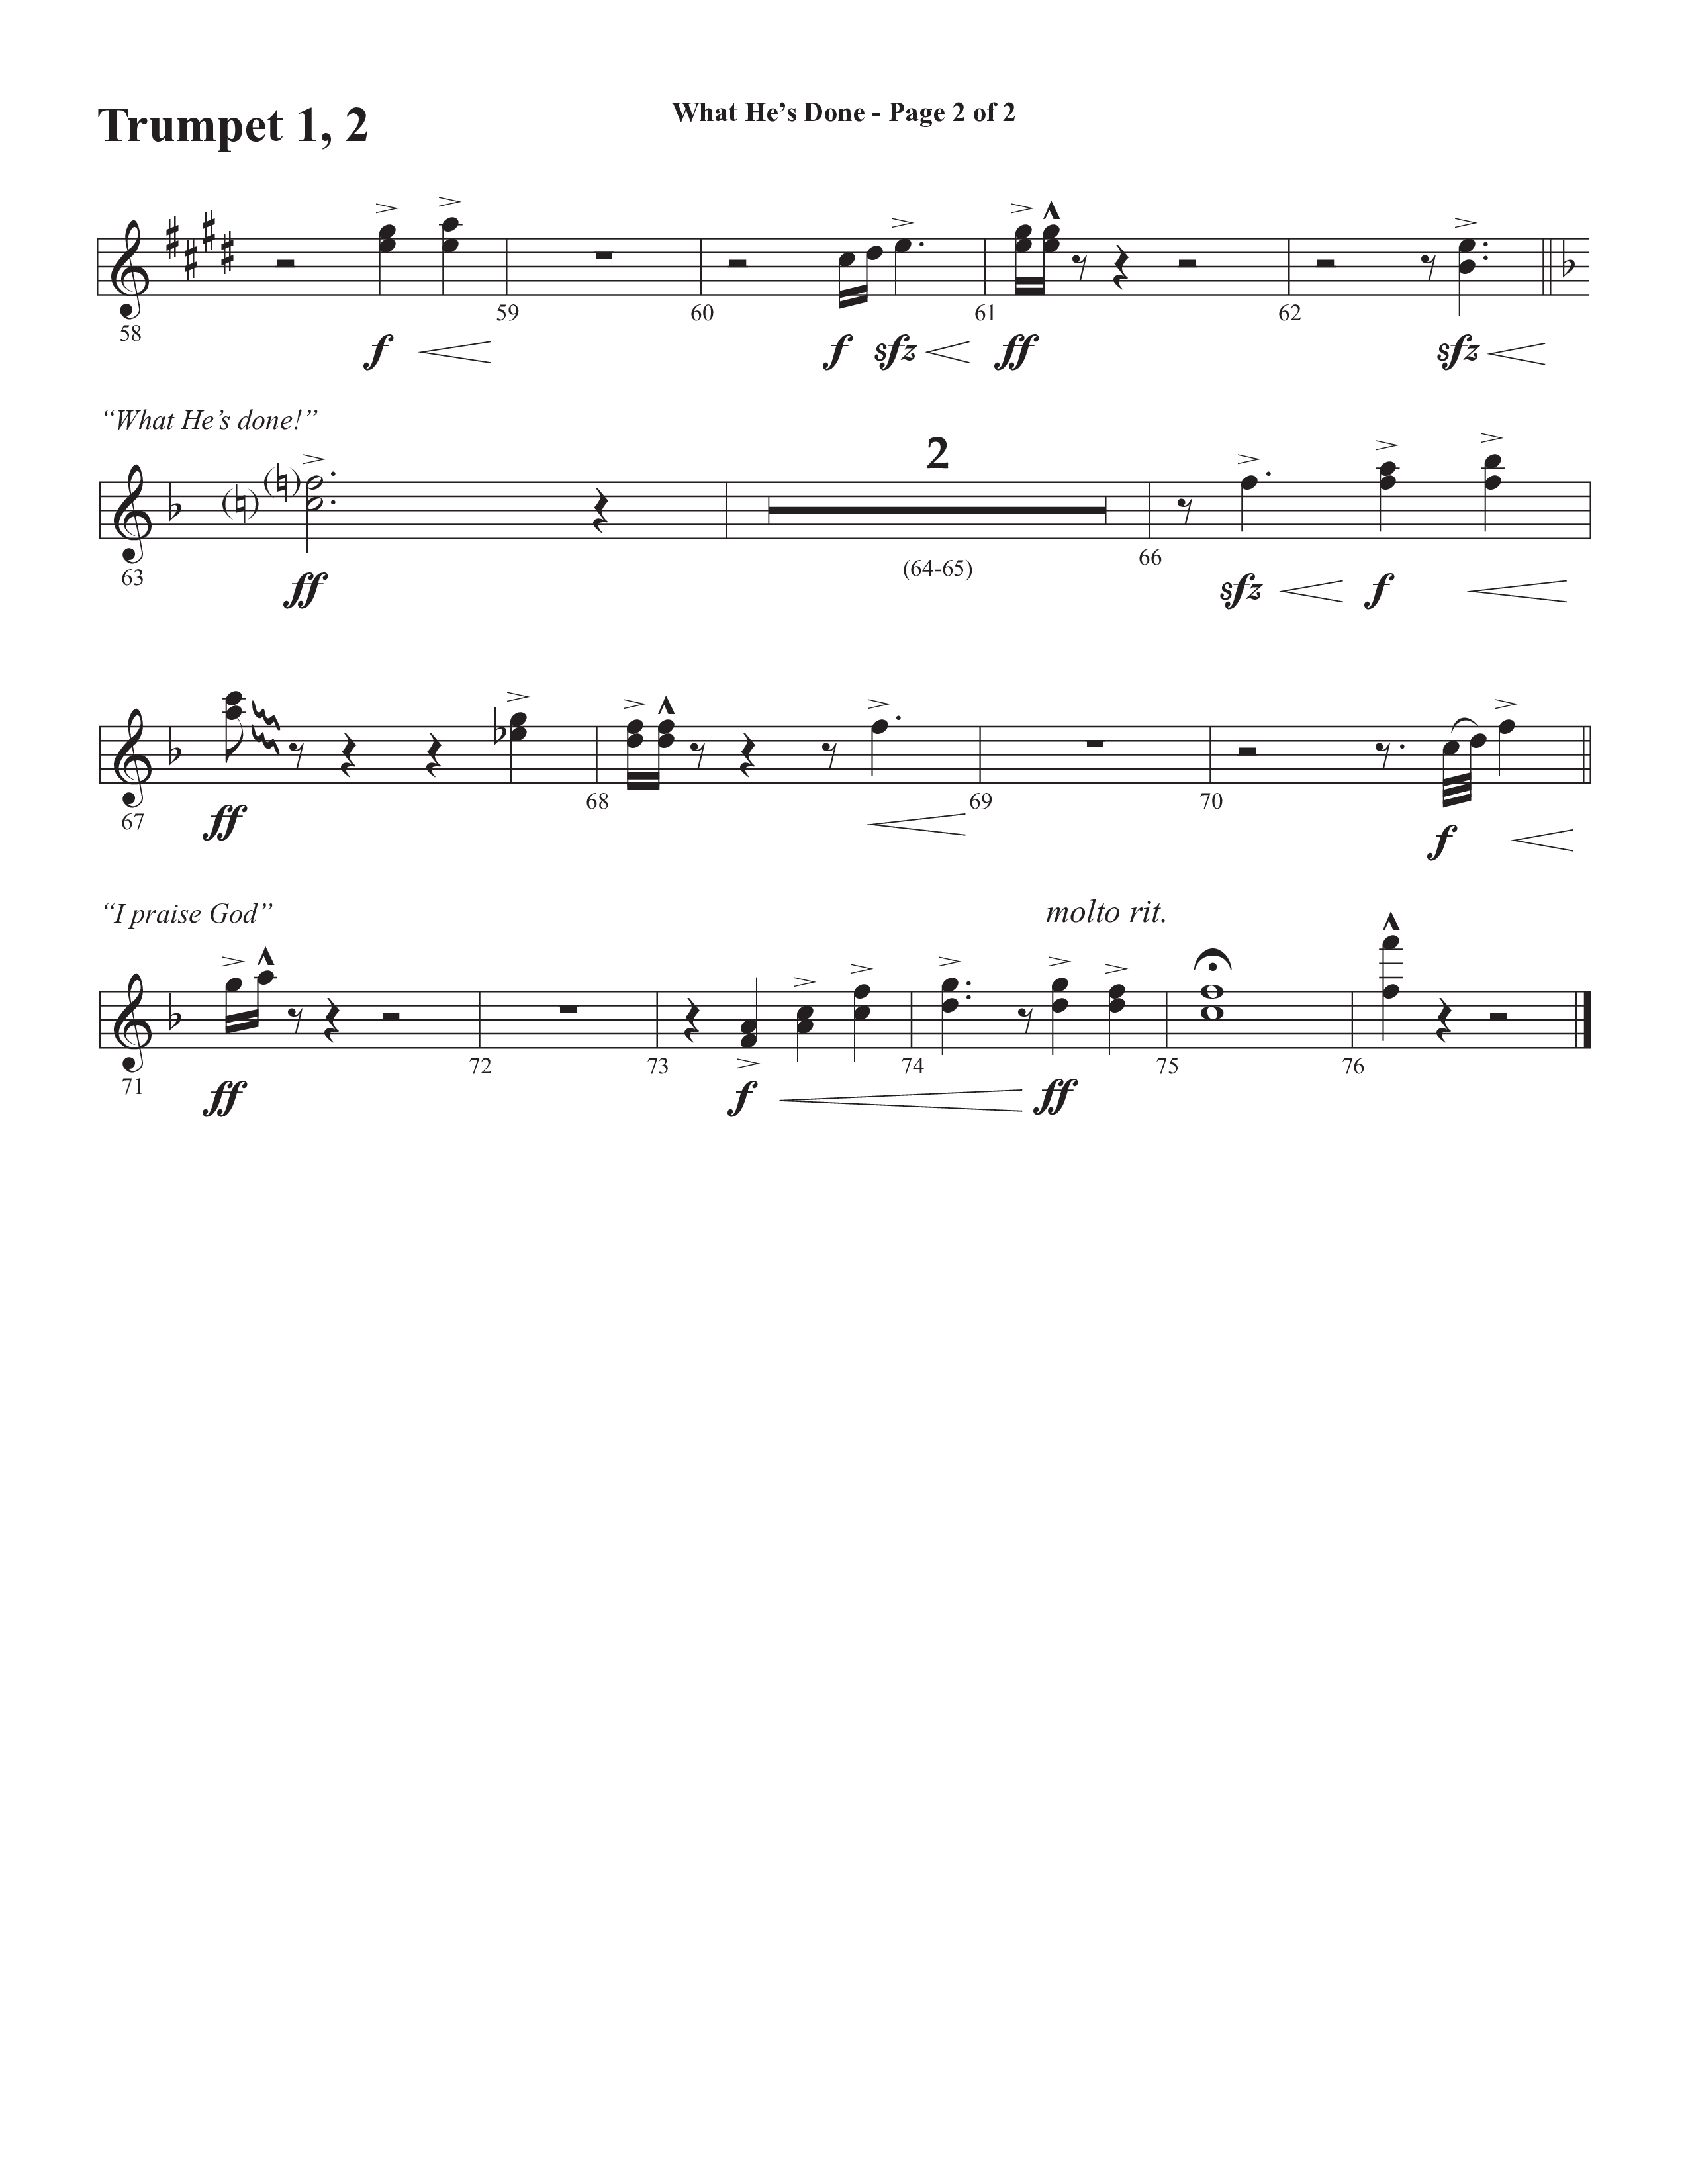 What He's Done (Choral Anthem SATB) Trumpet 1,2 (Semsen Music / Arr. Cliff Duren)